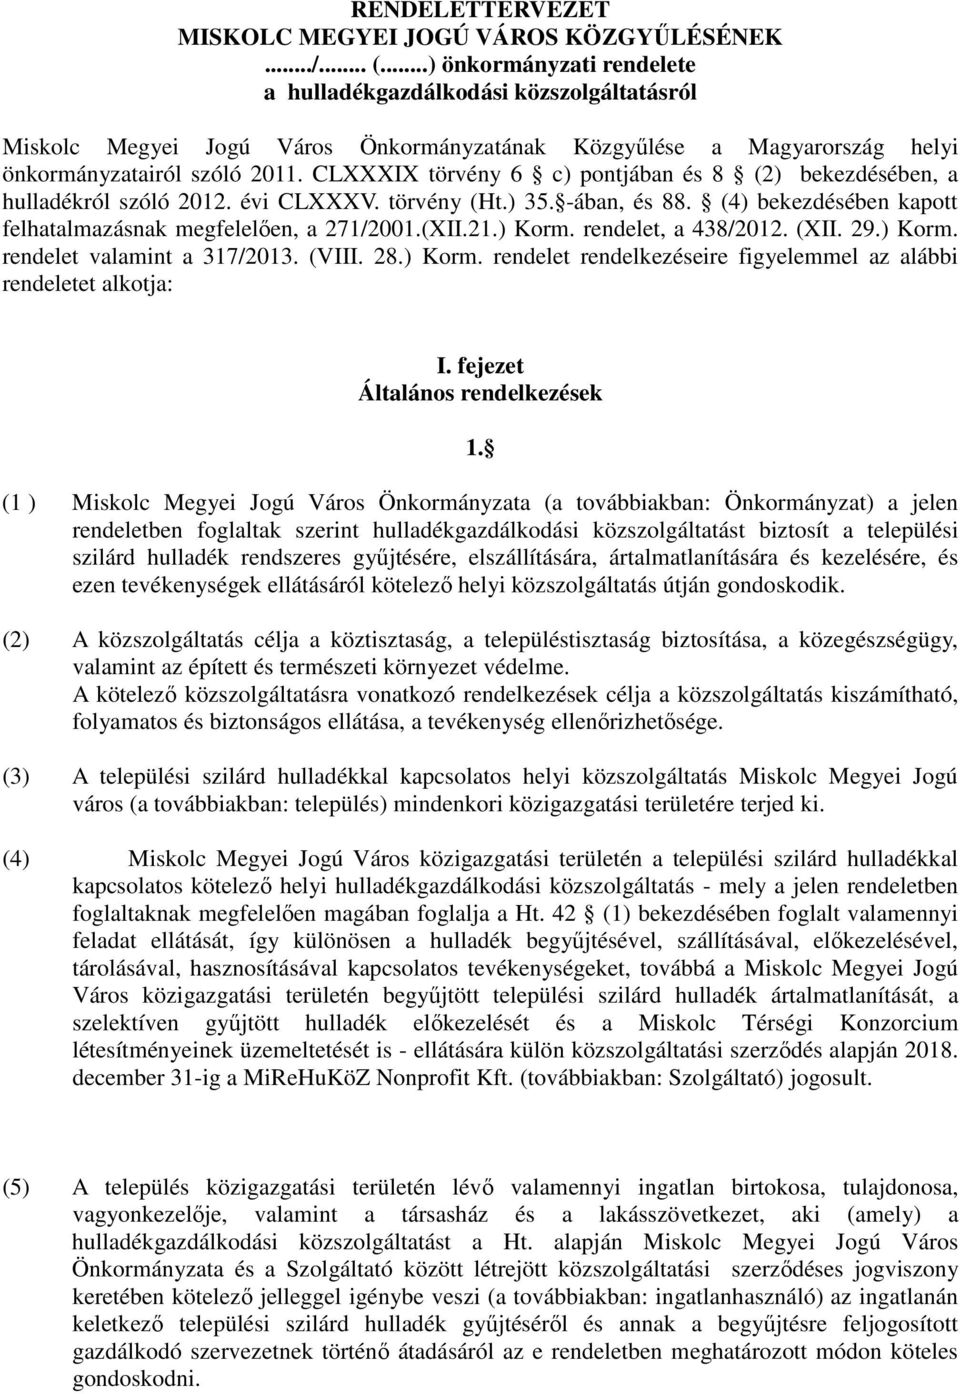 CLXXXIX törvény 6 c) pontjában és 8 (2) bekezdésében, a hulladékról szóló 2012. évi CLXXXV. törvény (Ht.) 35. -ában, és 88. (4) bekezdésében kapott felhatalmazásnak megfelelıen, a 271/2001.(XII.21.